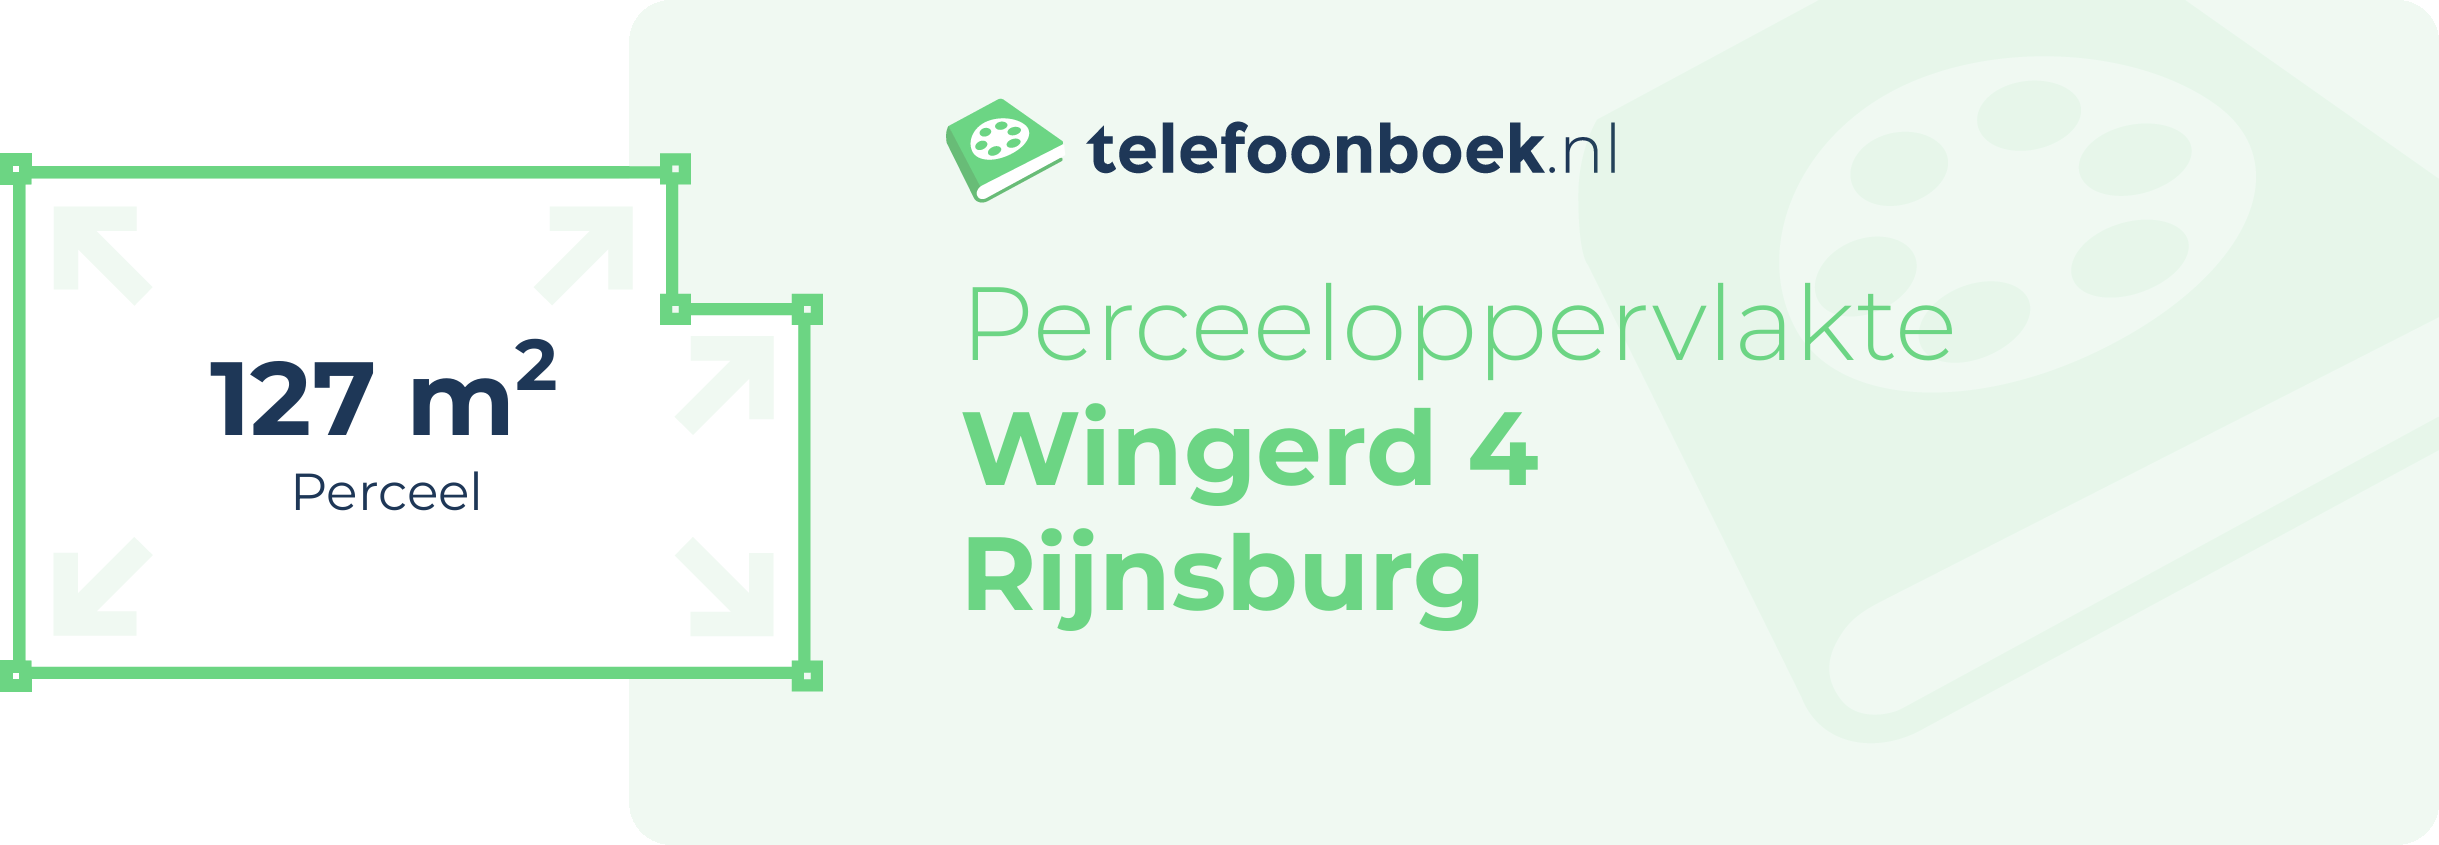 Perceeloppervlakte Wingerd 4 Rijnsburg